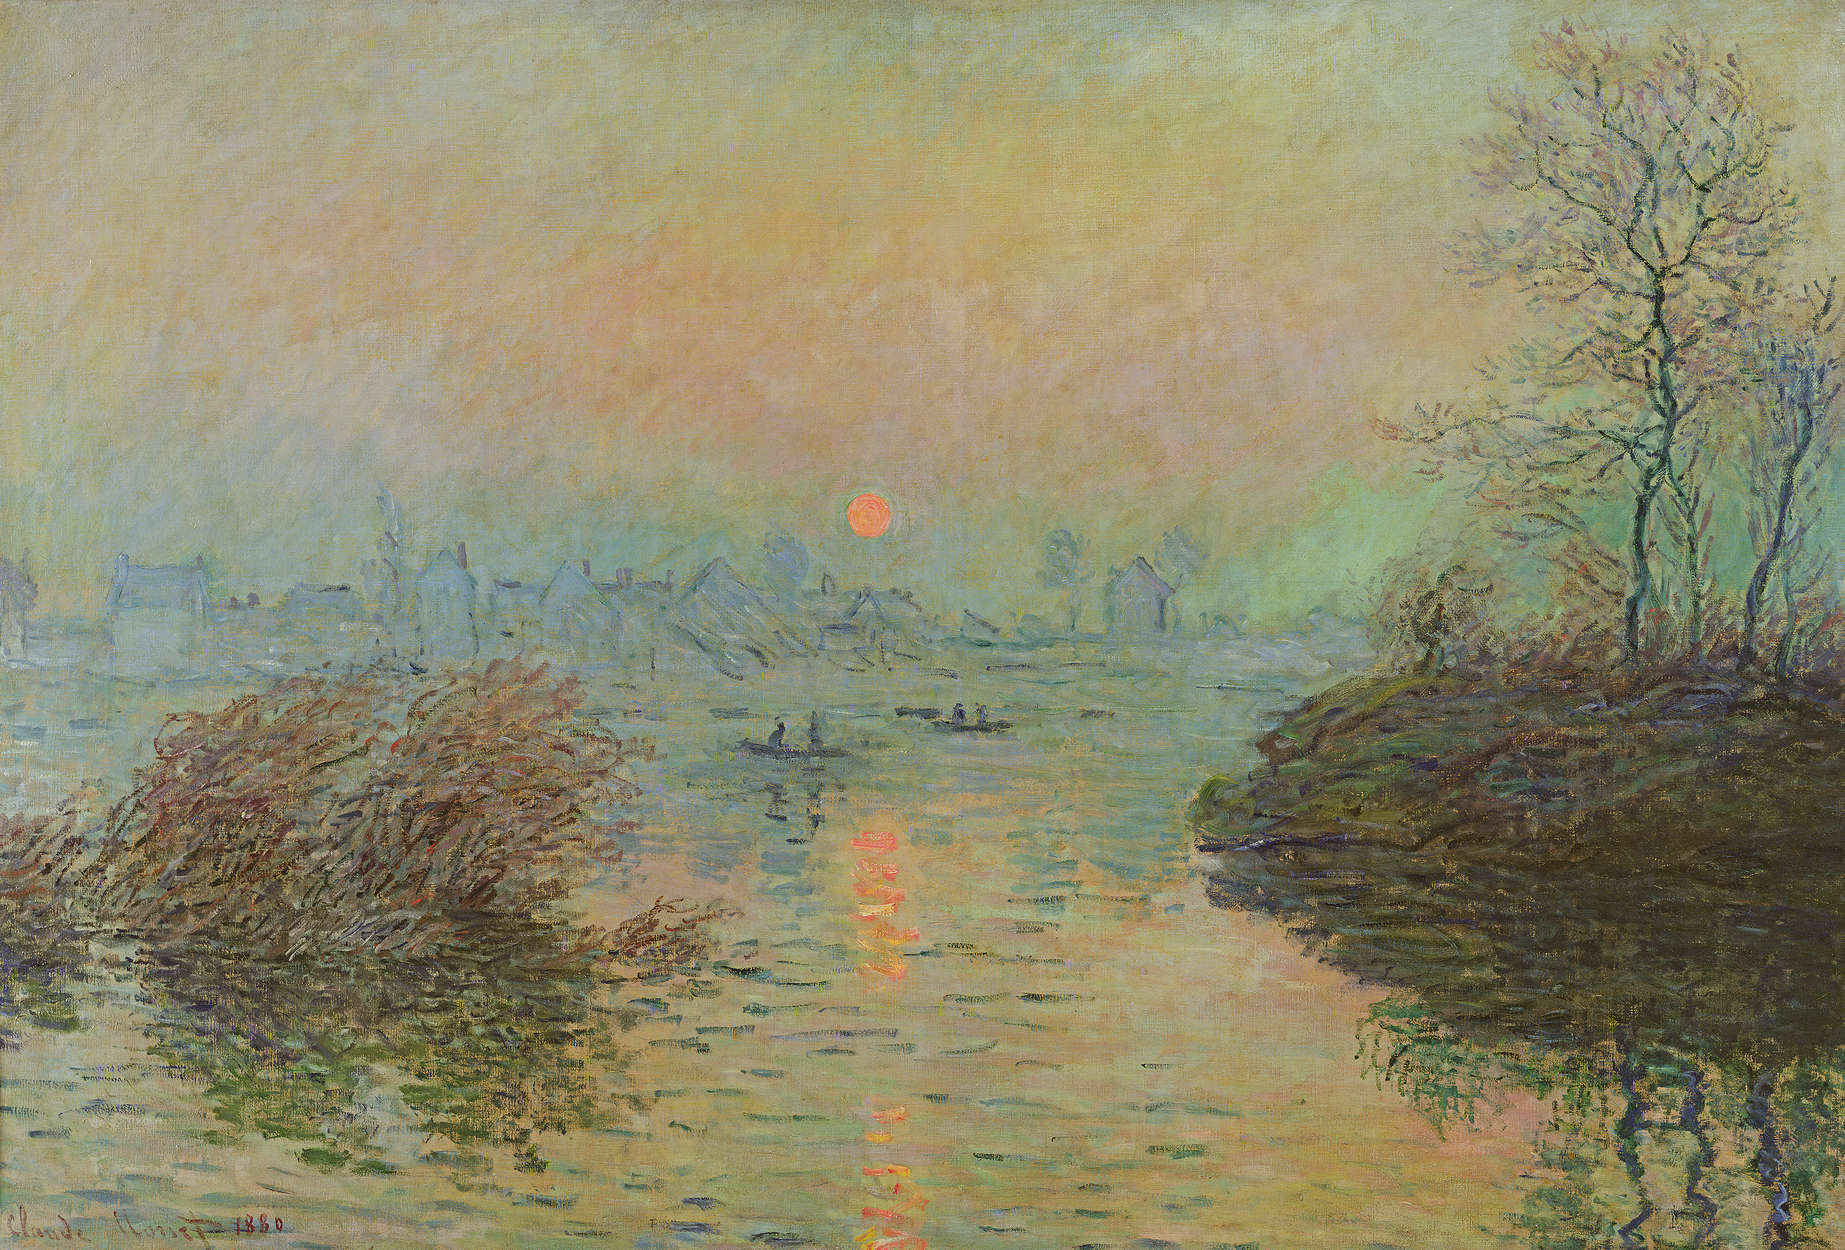             Muurschildering "Zonsondergang over de Seine bij Lavacourt" van Claude Monet
        